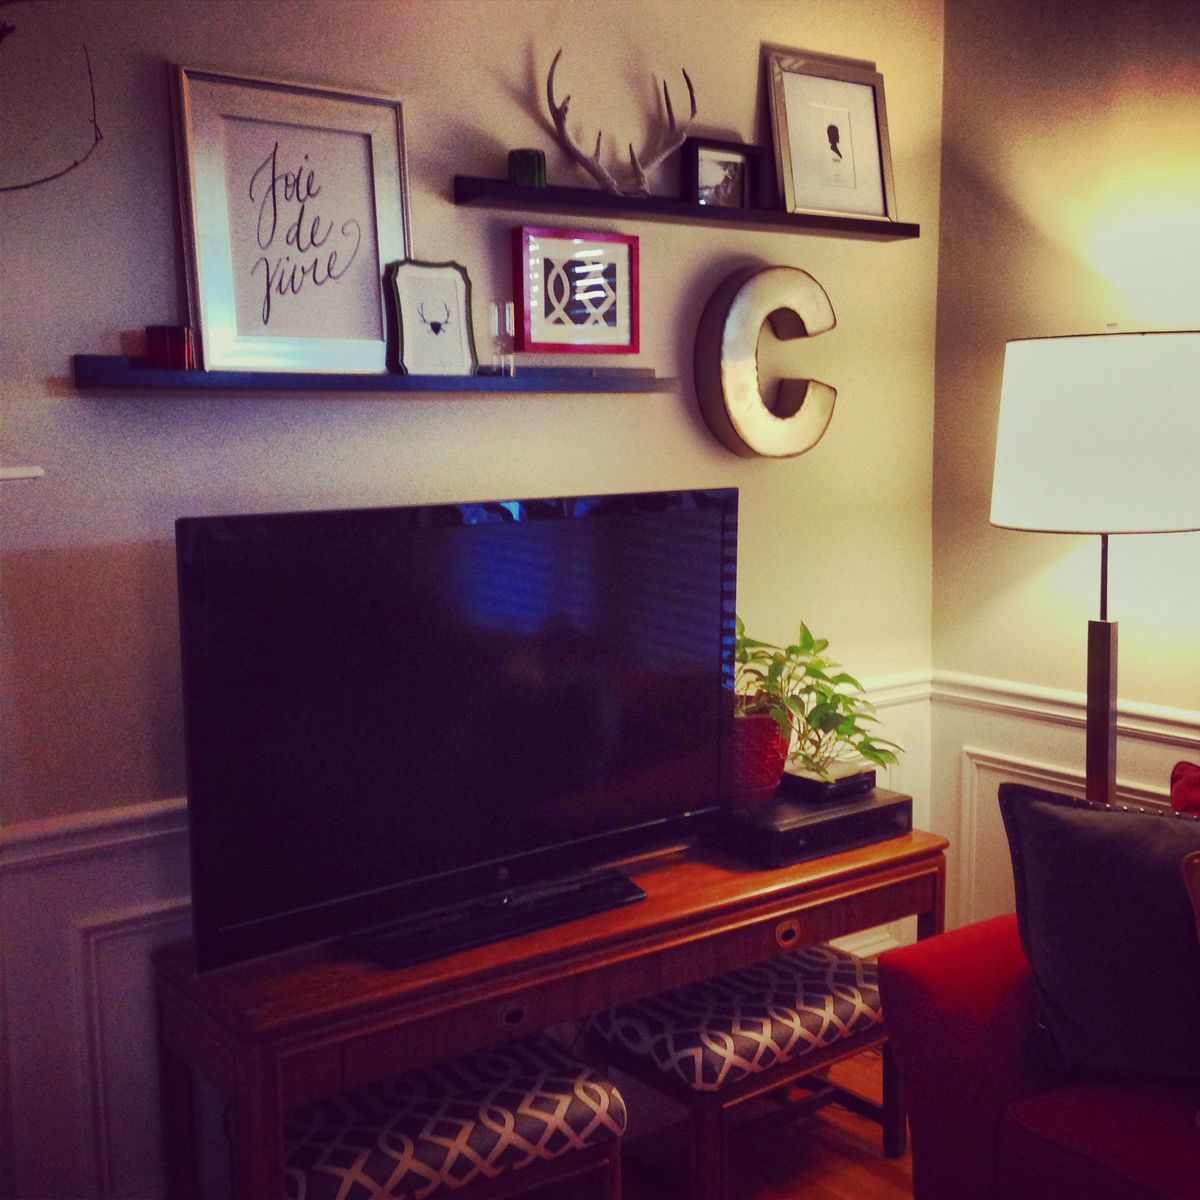 TV decor, TV wall decor, Picture ledge above tv